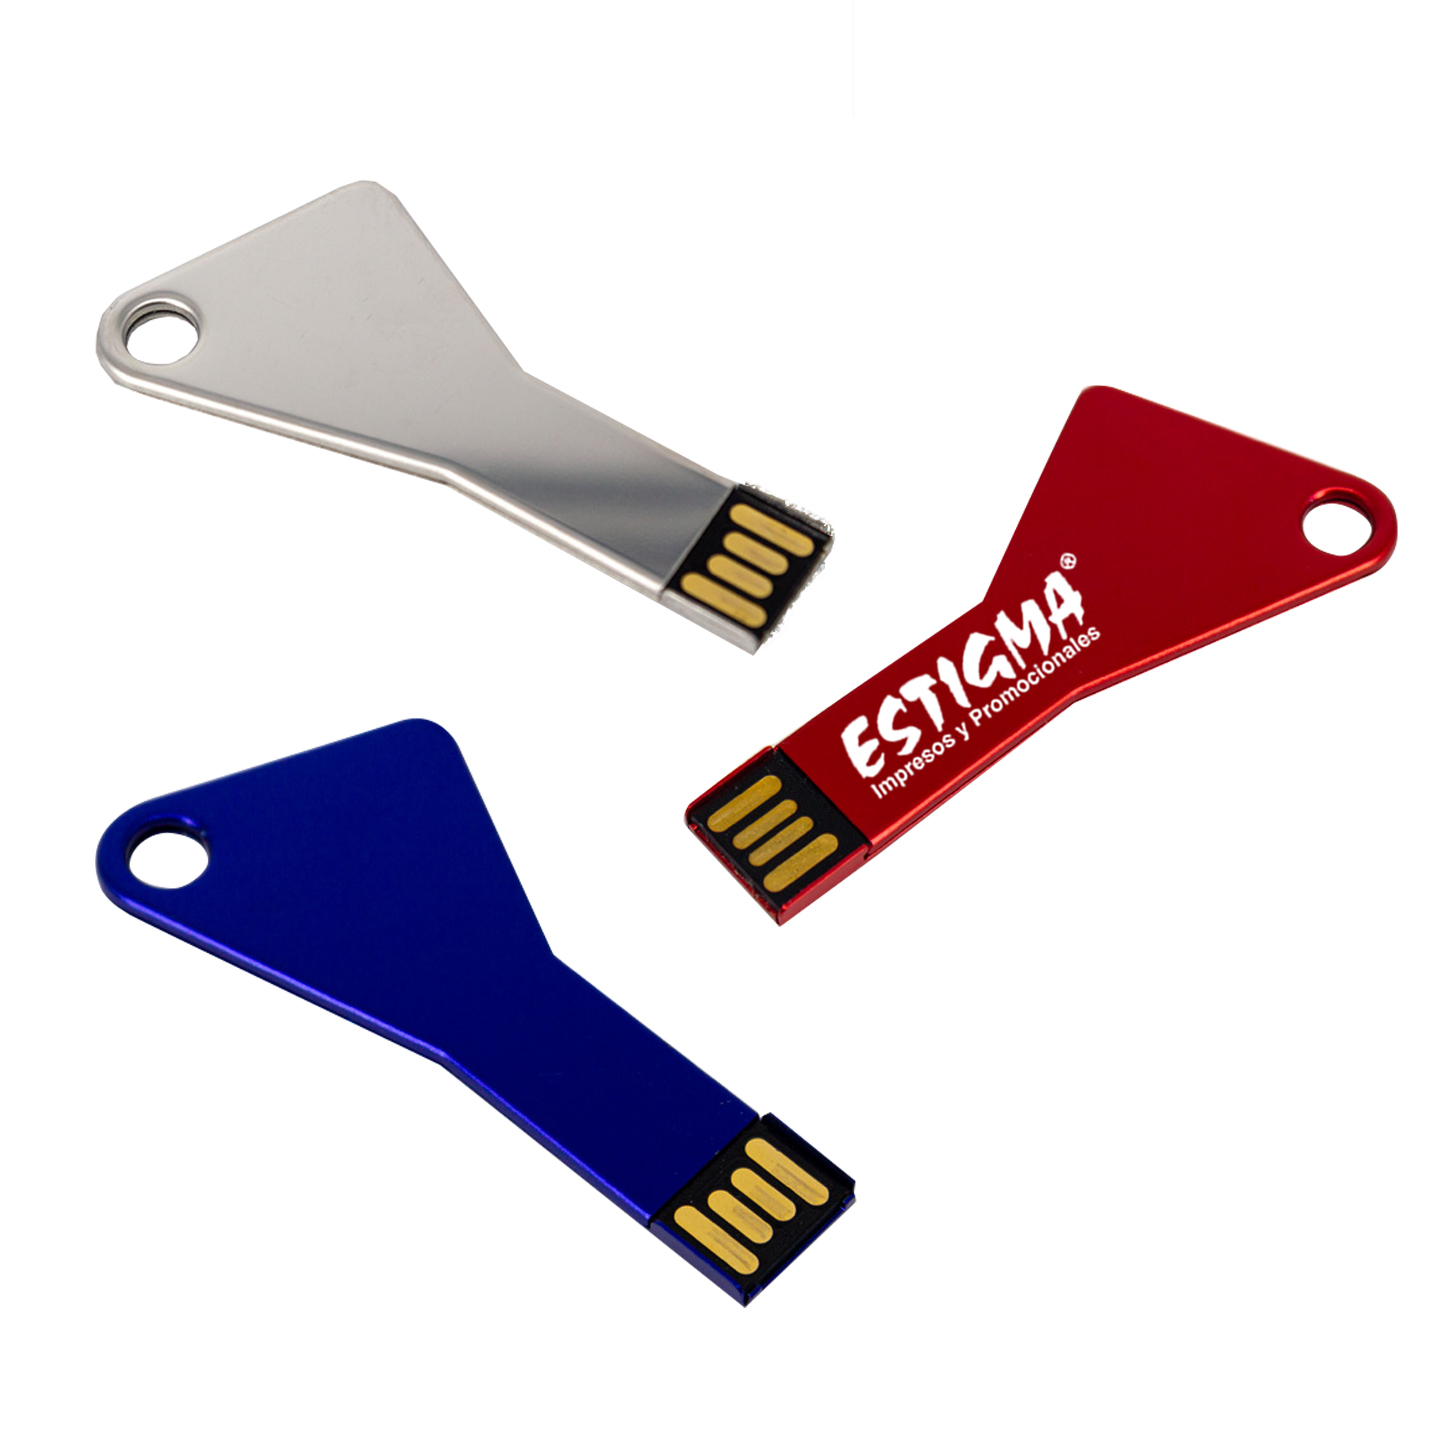 USB PROMOCIONAL, USB FORMA DE LLAVE, USB MAYOREO, USB PROMOCIONAL, USB PERSONALIZADA